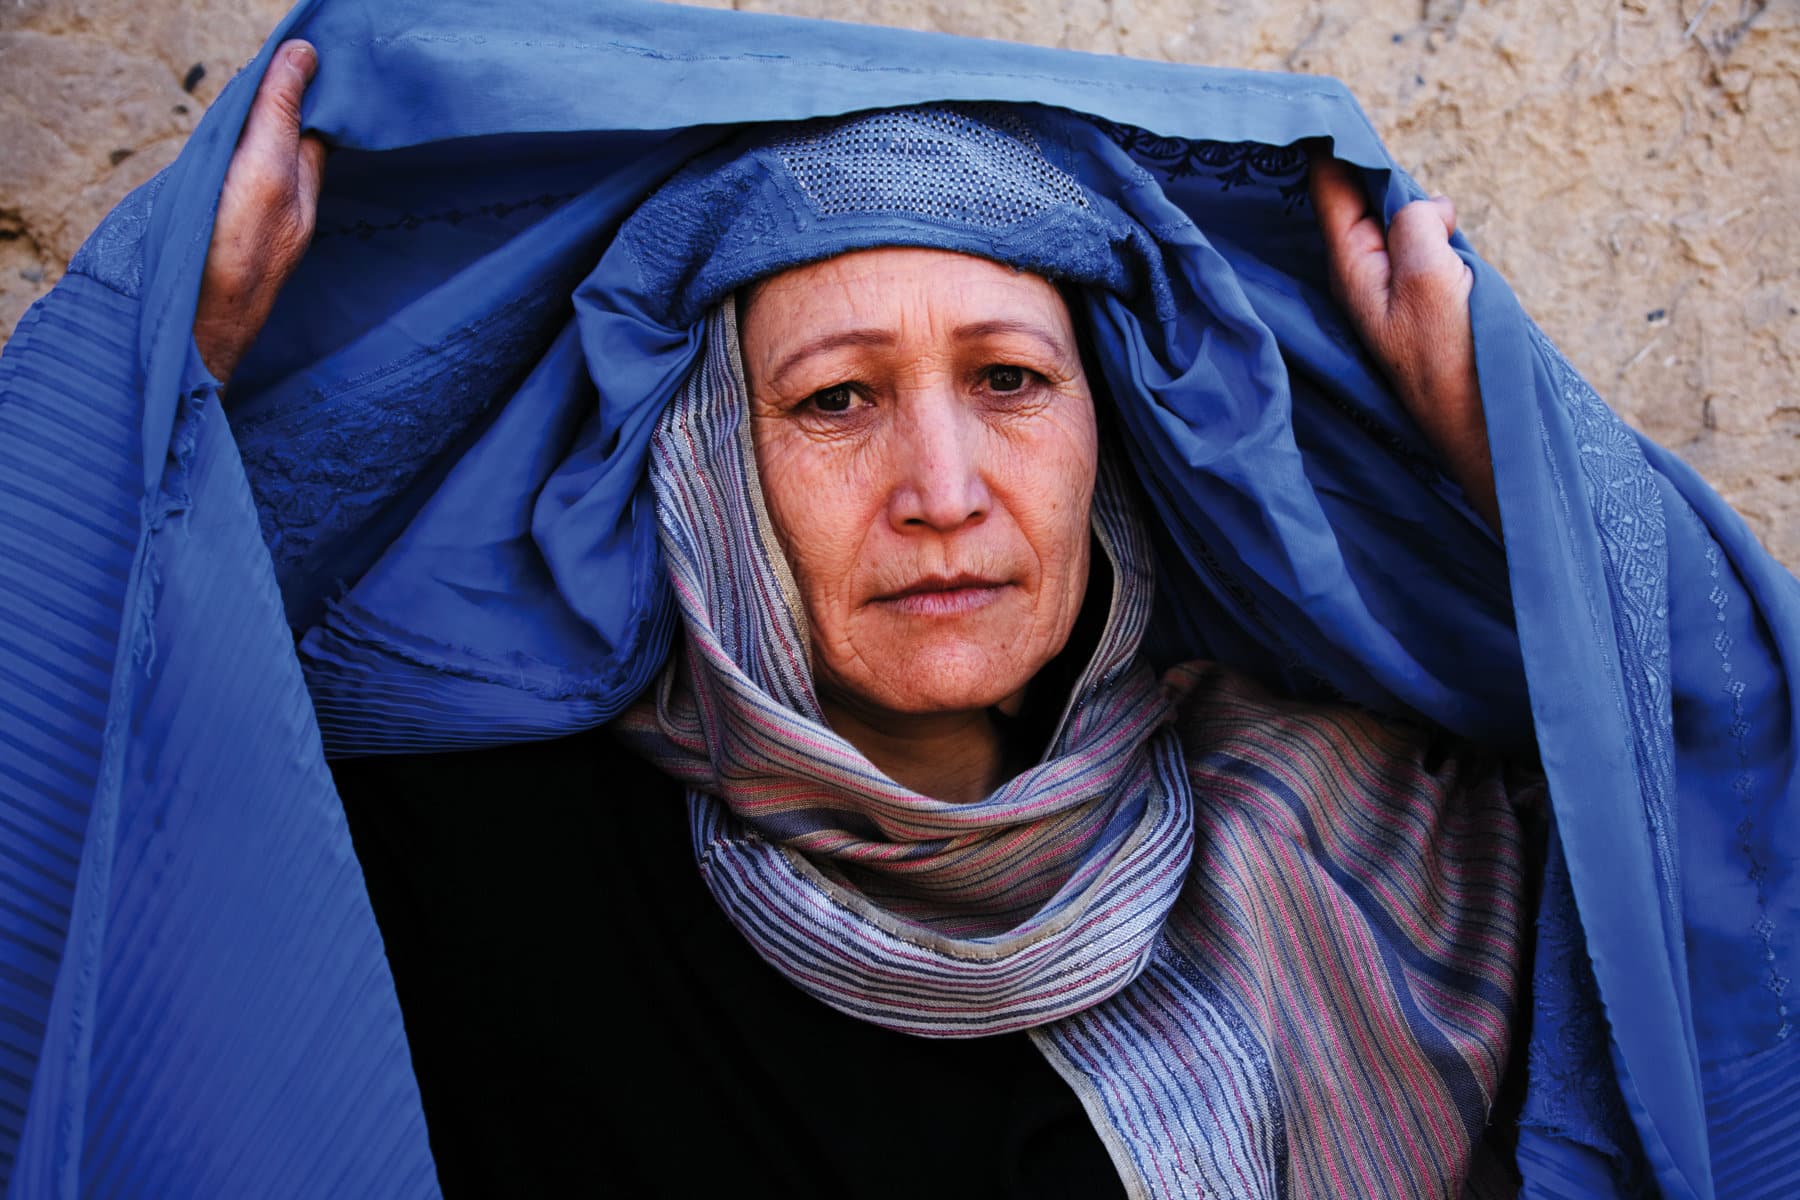 Figlie di Kabul: il documentario sulla forza delle donne disponibile su Freeda